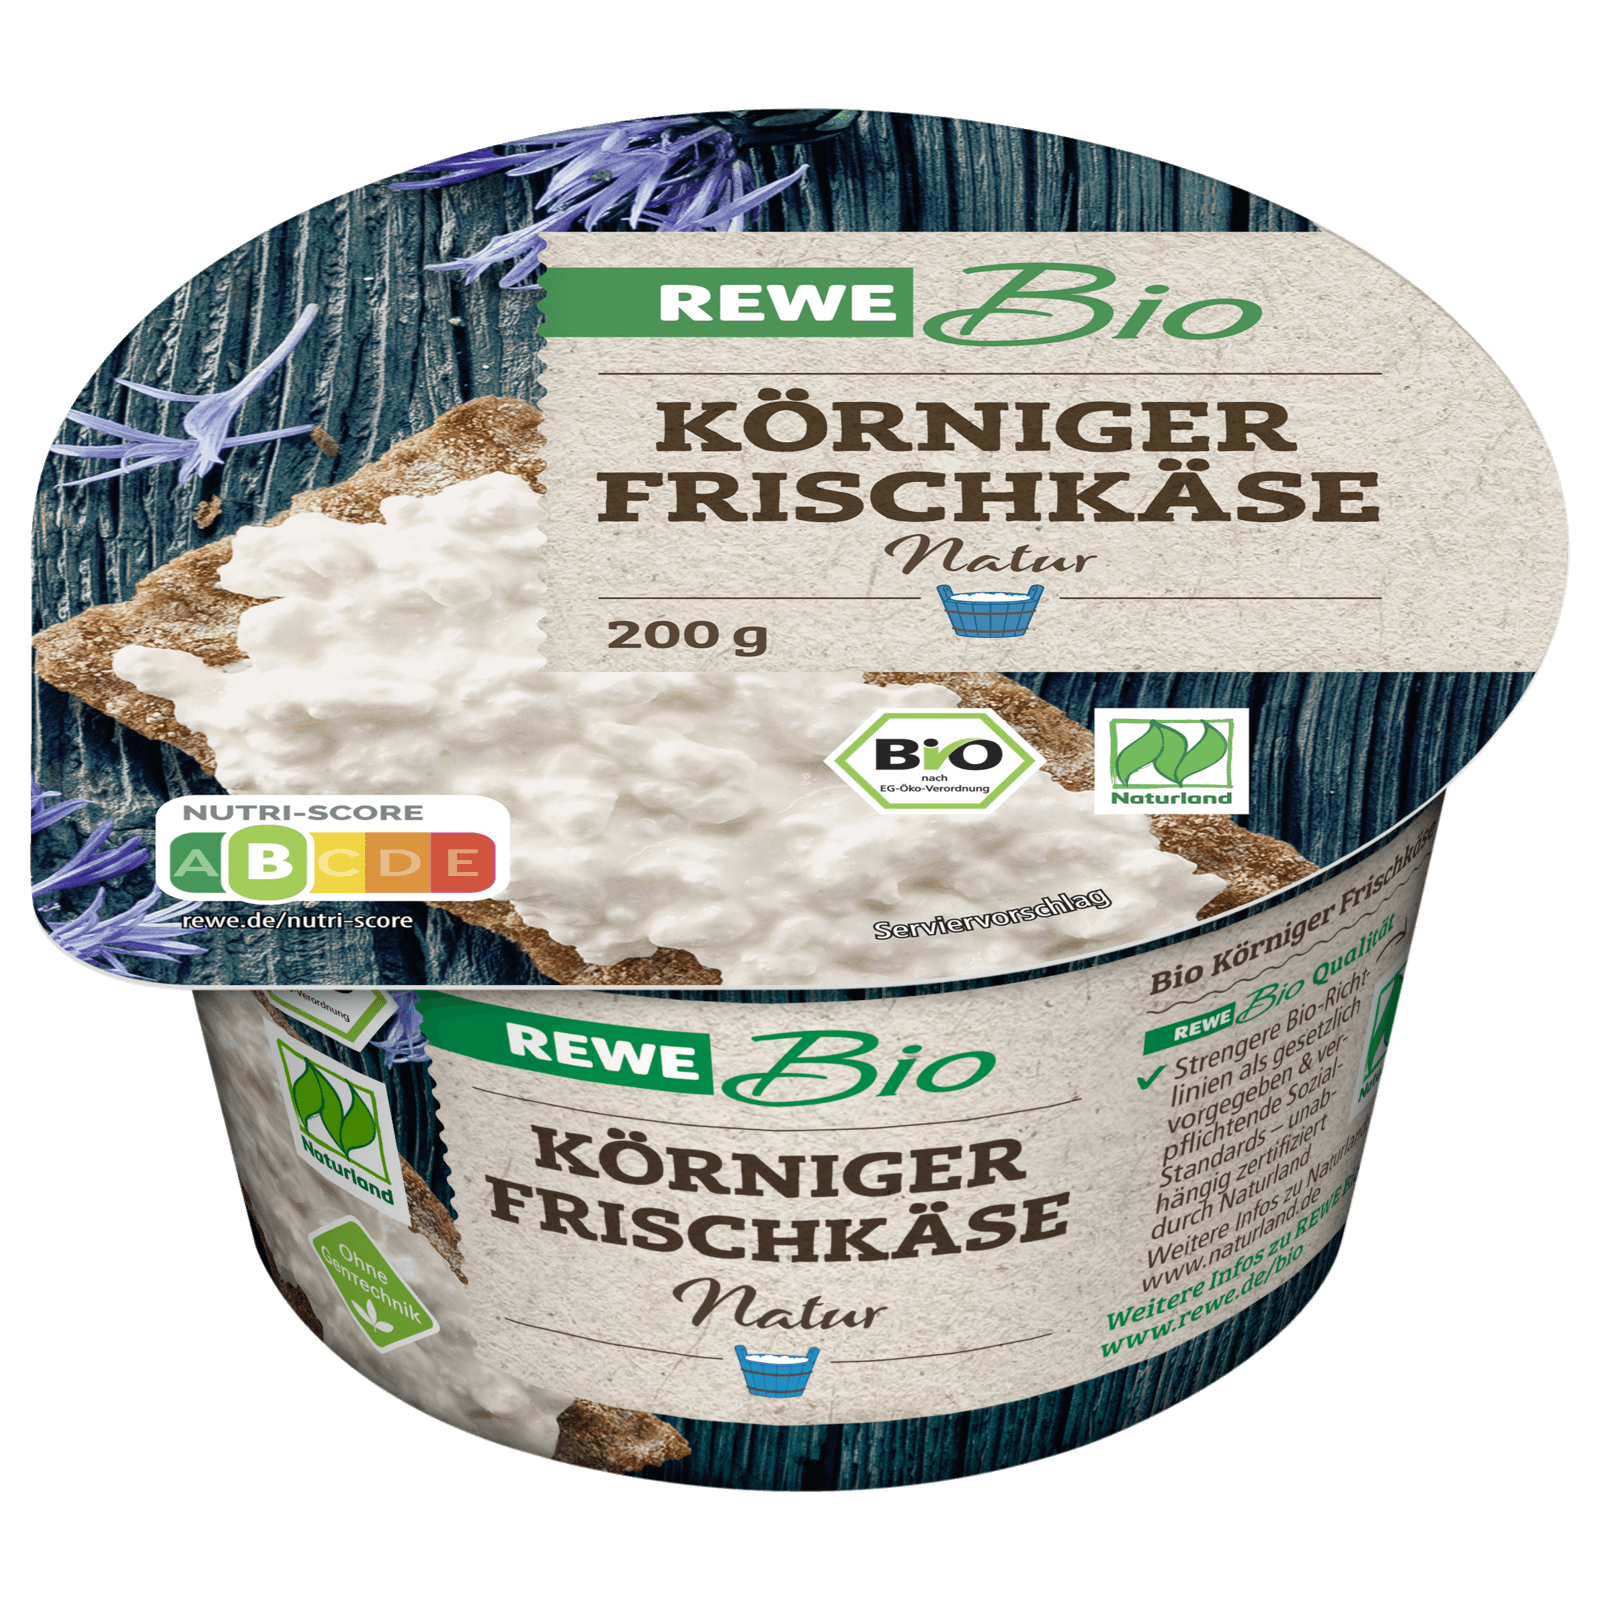 REWE Bio Körniger Frischkäse 200g bei REWE online bestellen!